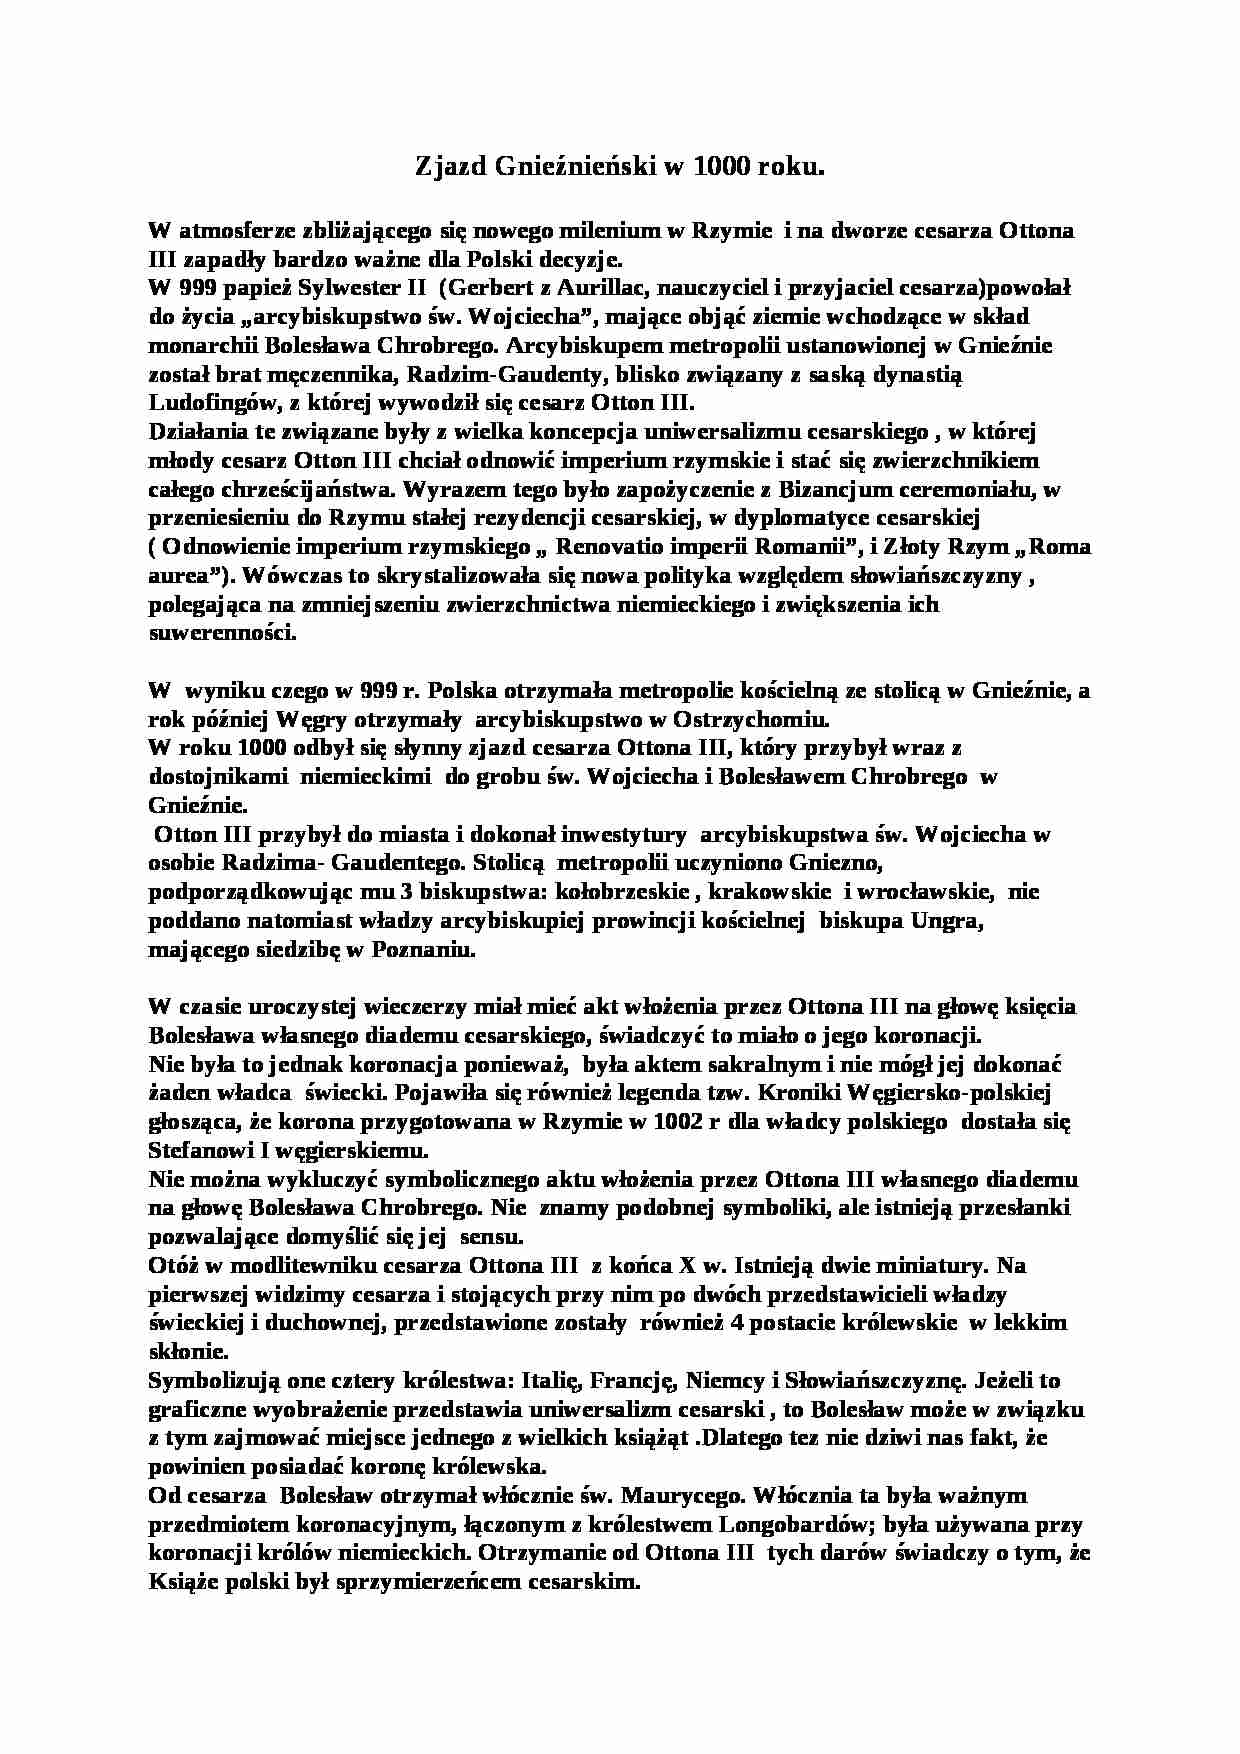 Zjazd Gnieźnieński w 1000 roku - strona 1